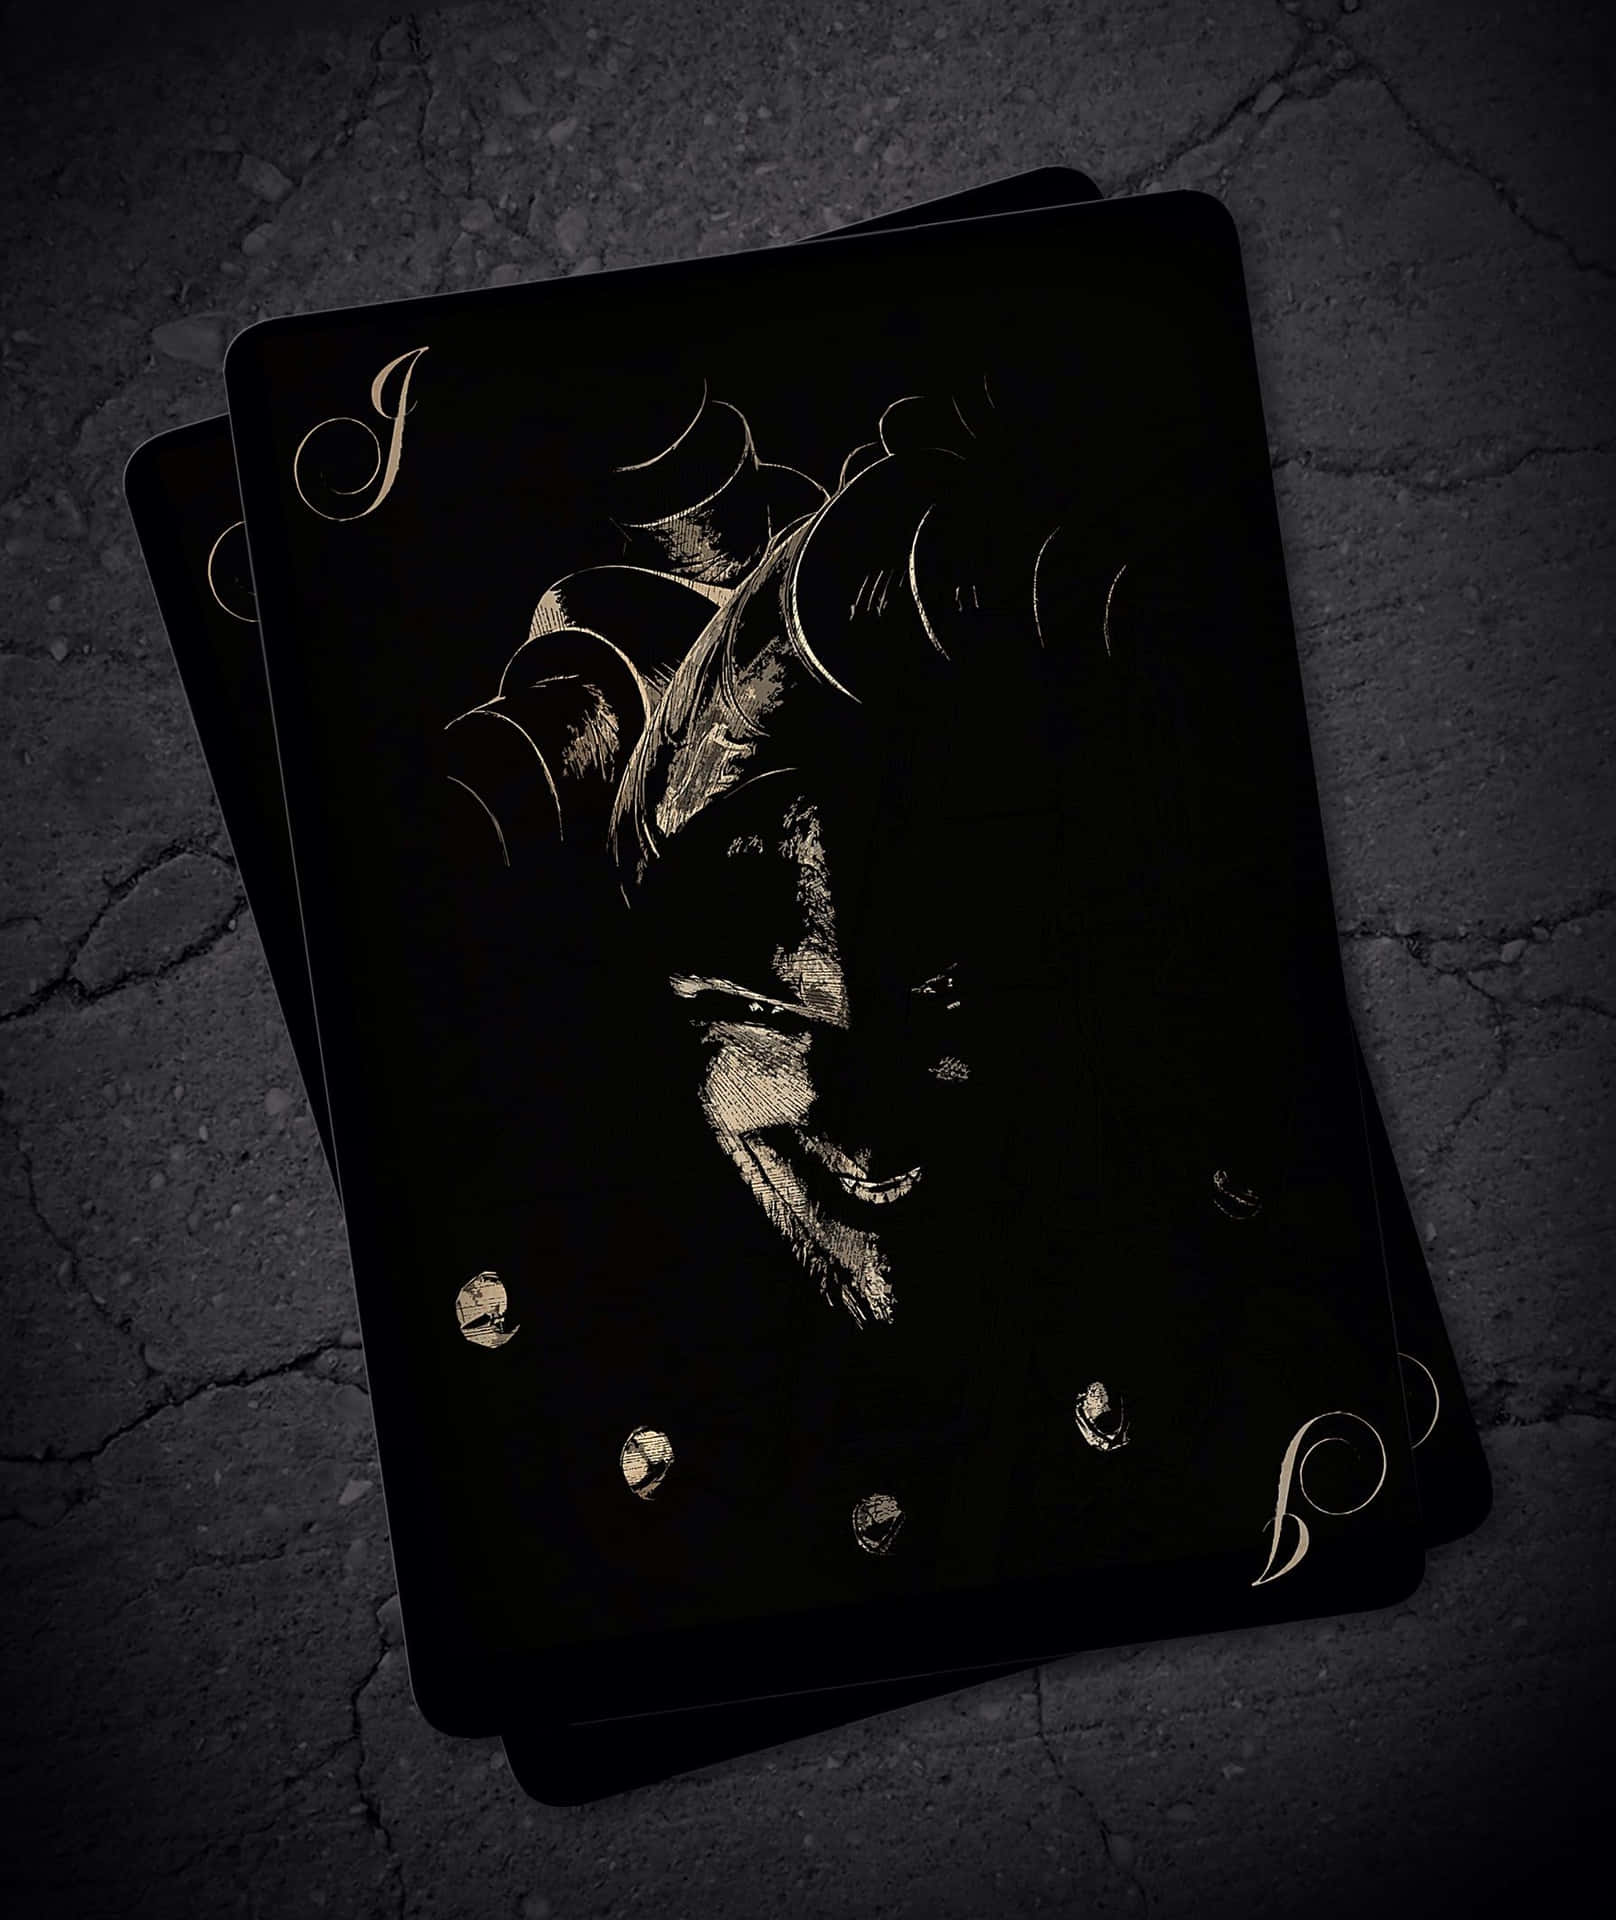 Mysterious Joker Card Wallpaper Wallpaper